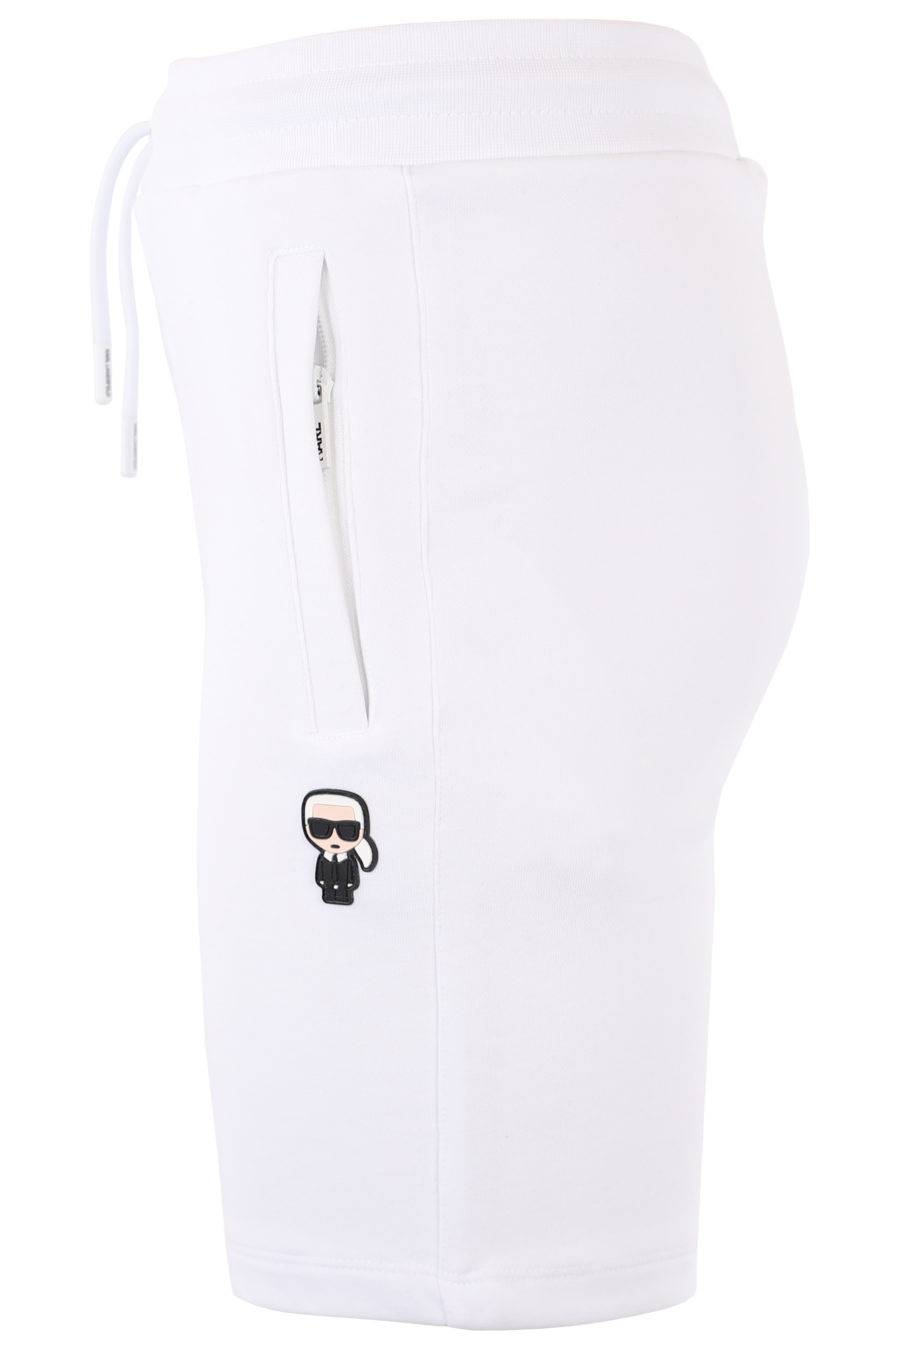 Pantalón corto blanco con logo de goma - IMG 1015